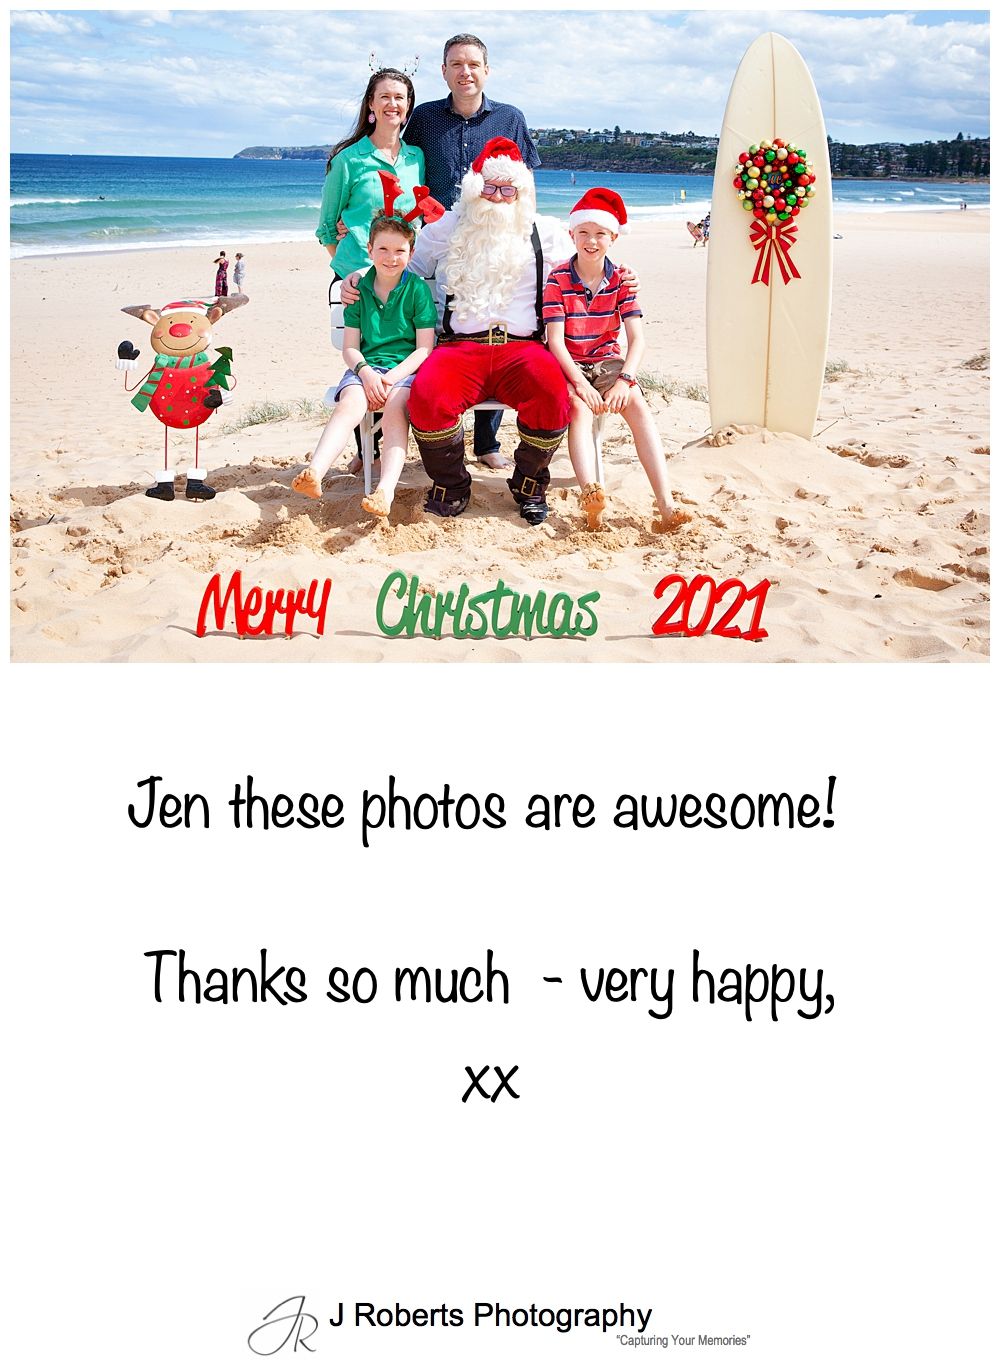 Aussie Santa Photos at Long Reef Beach Customer Feedback 2021